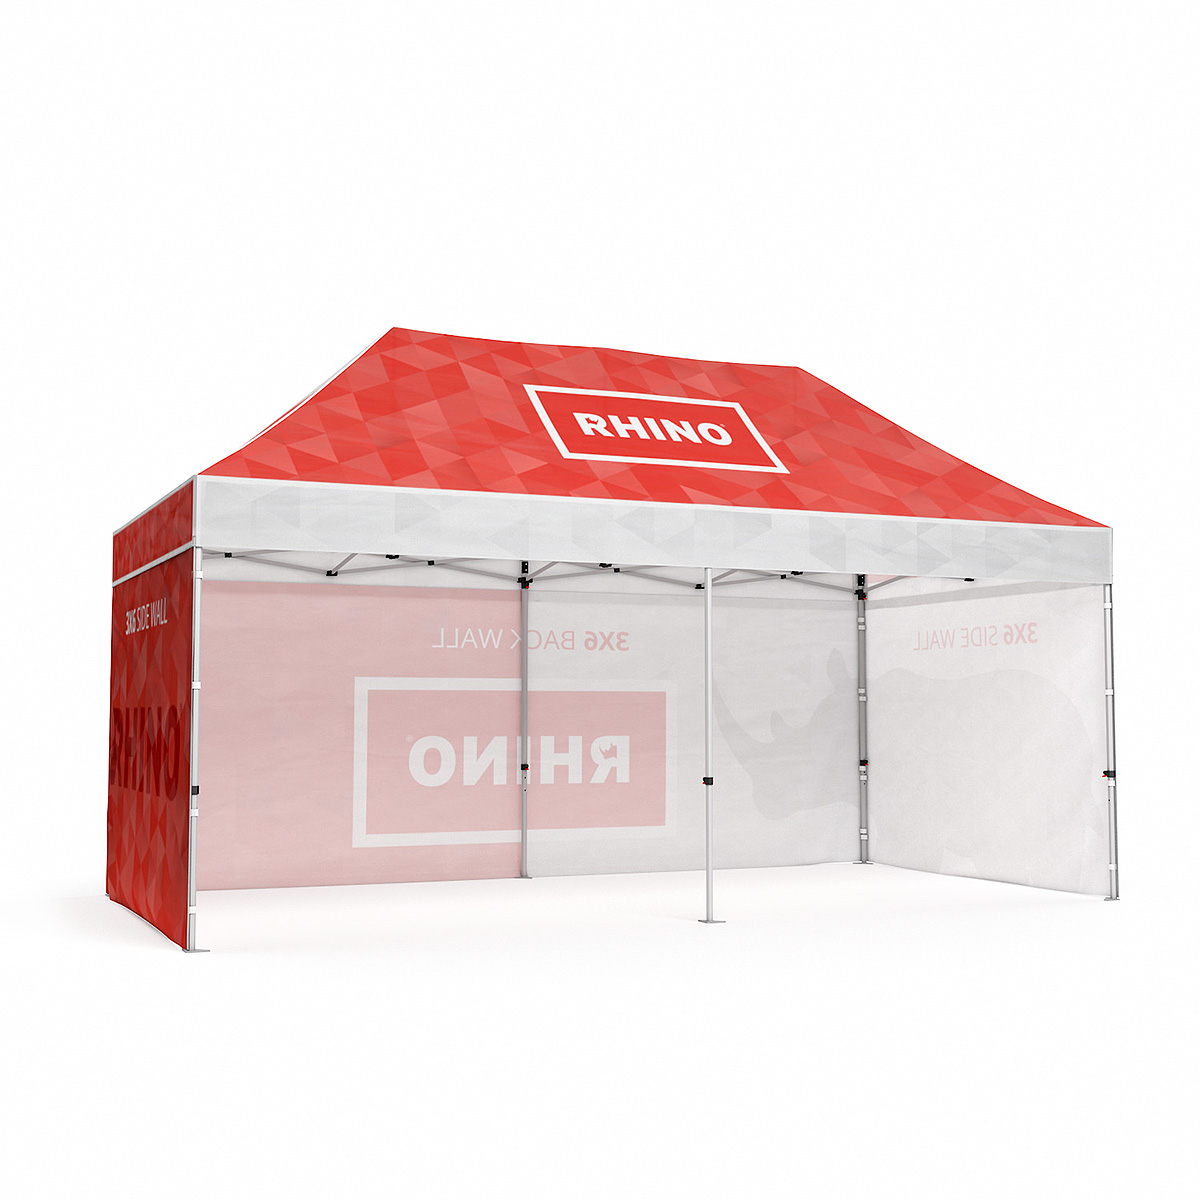 RHINO® Tent 3m x 6m Branded Gazebo